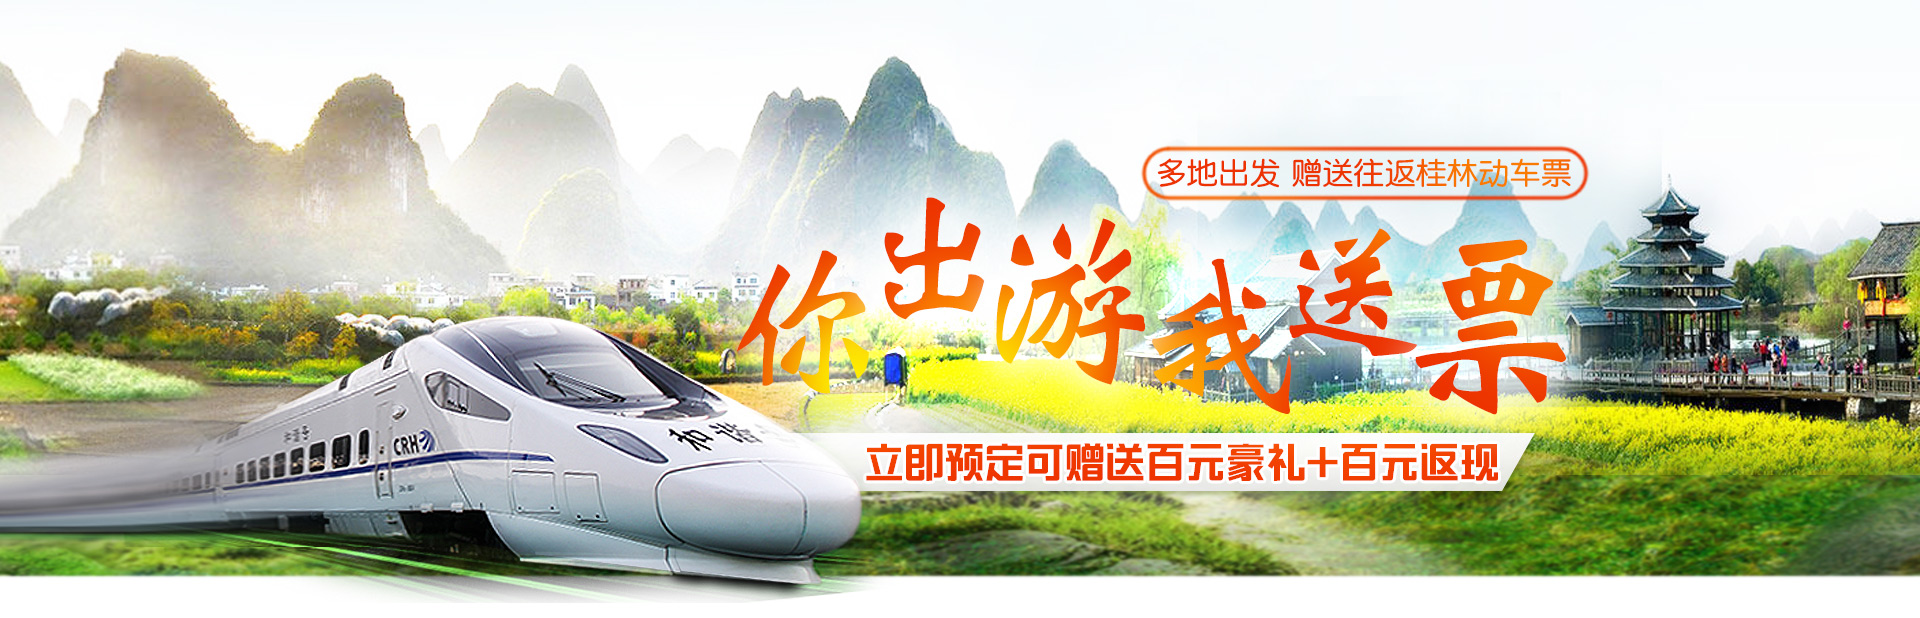 桂林高铁跟团旅游